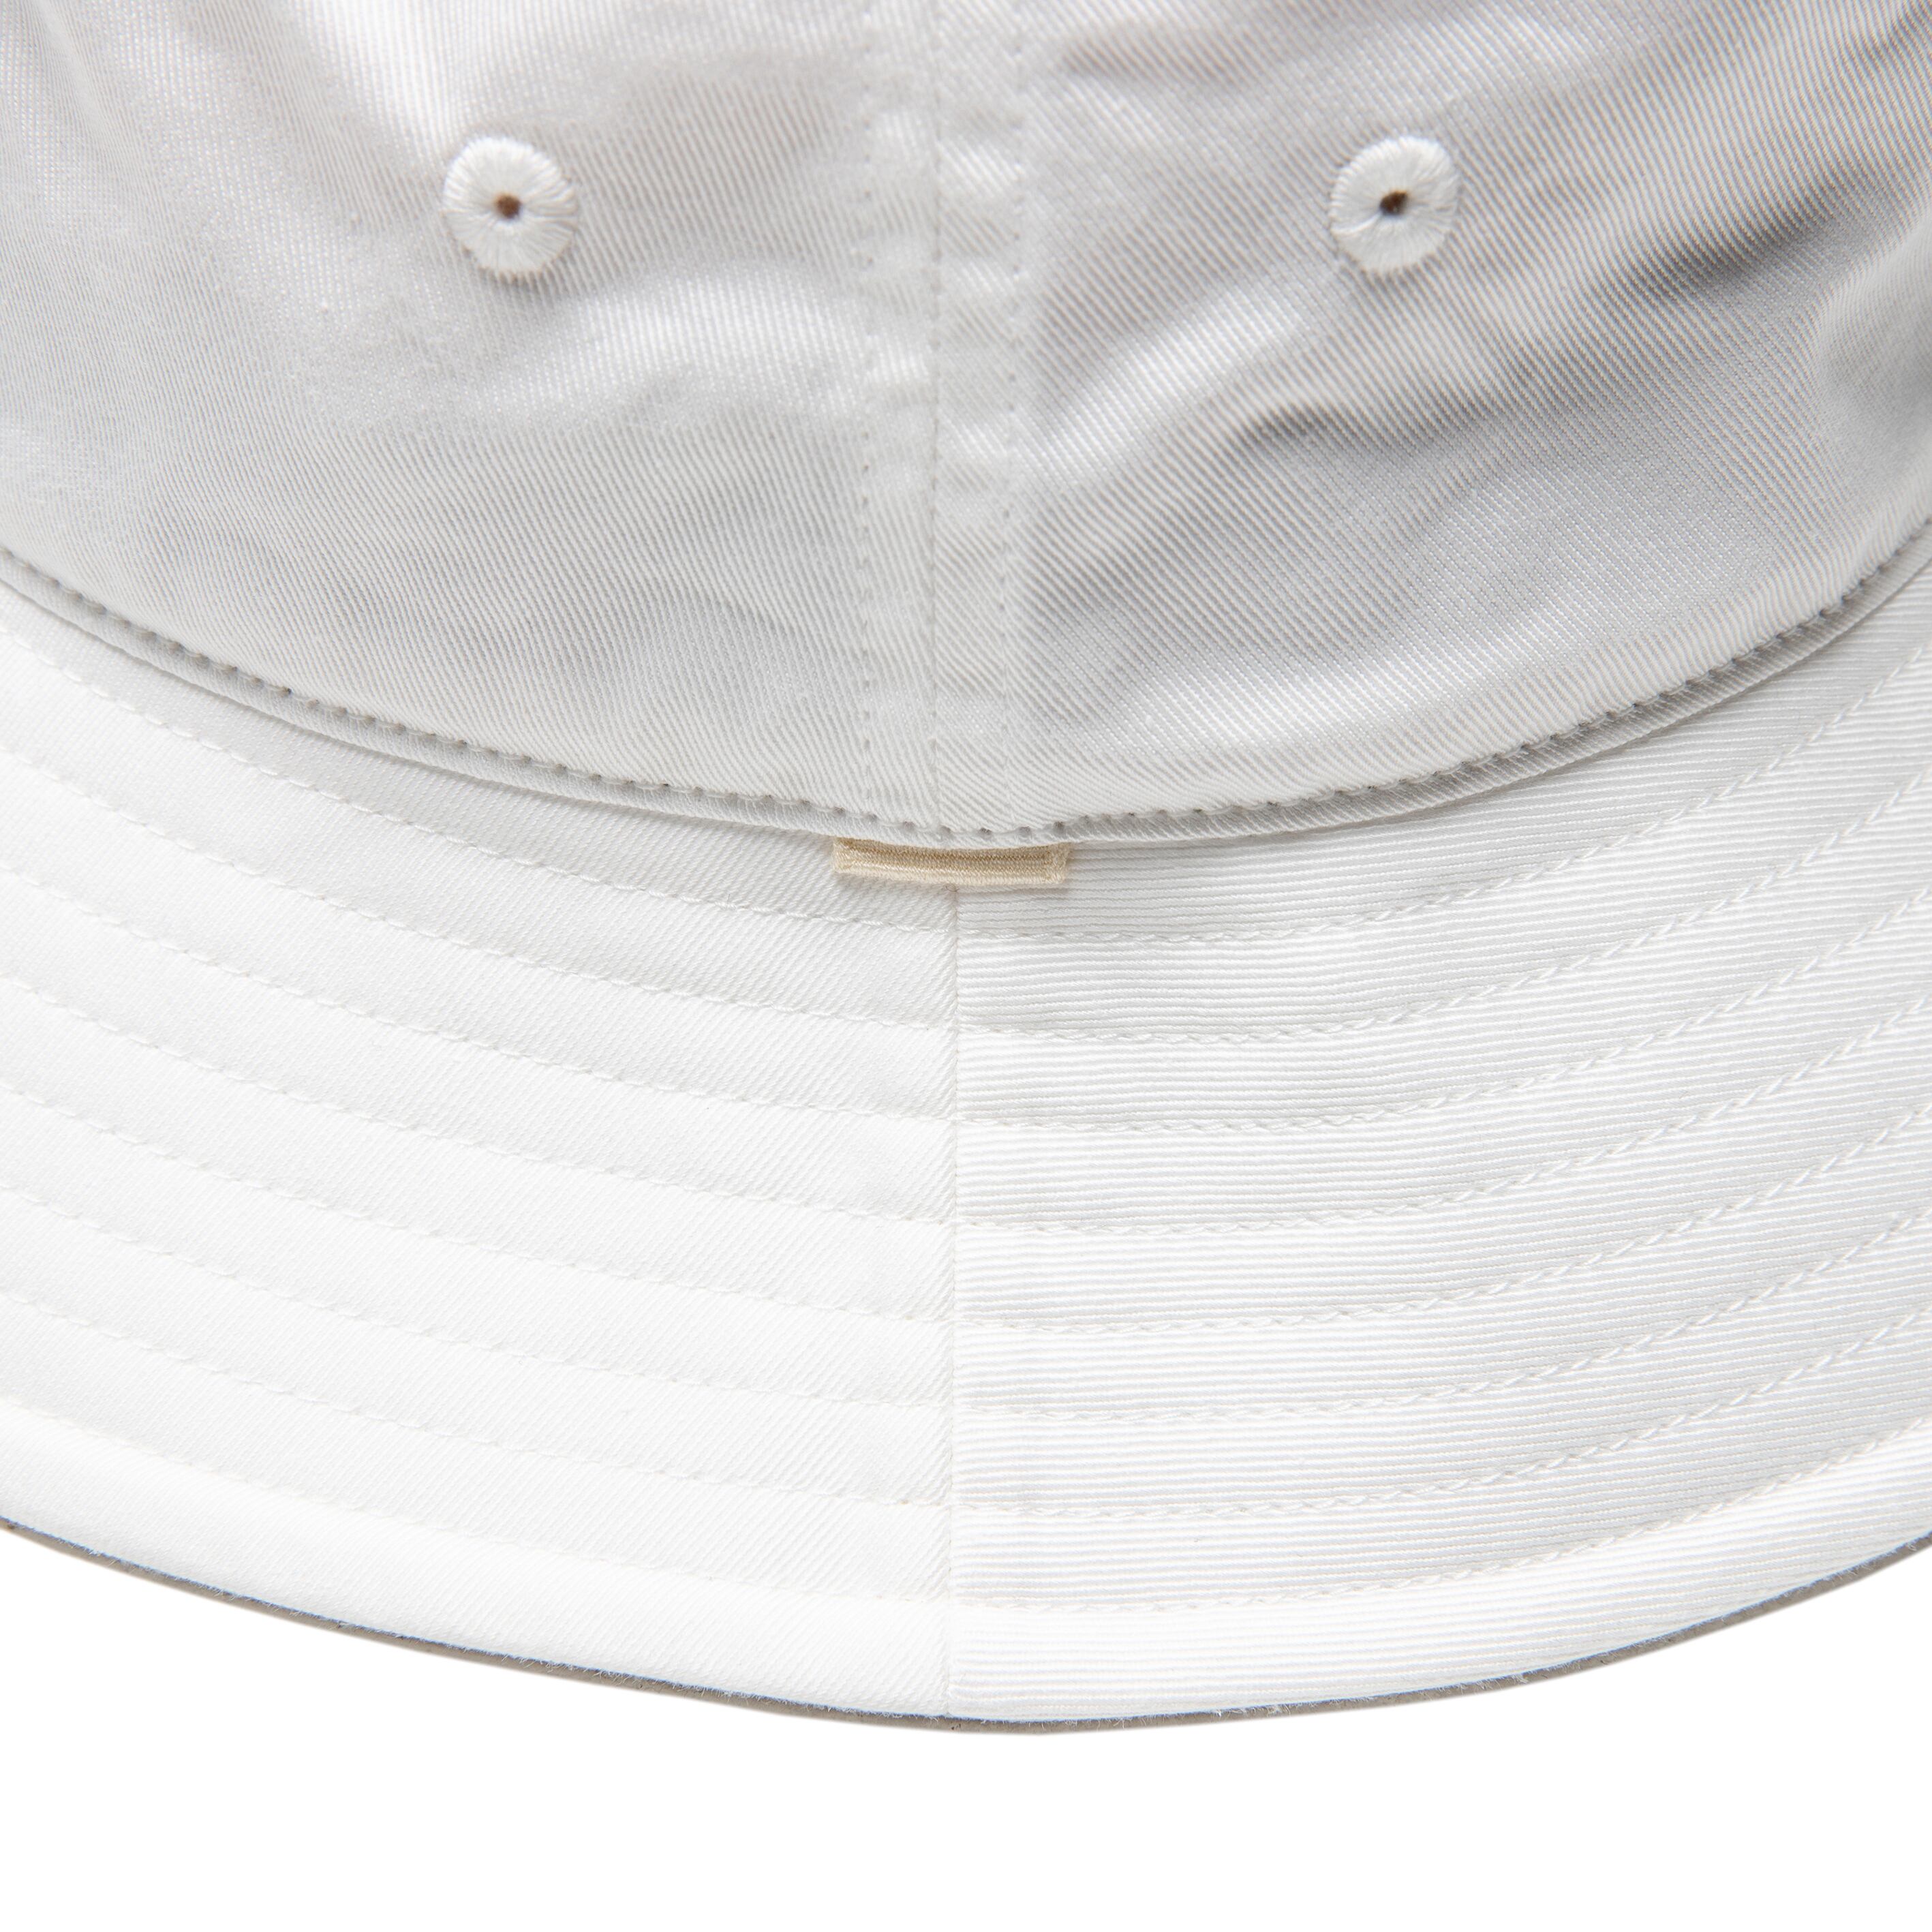 OVY Cotton Nylon Bucket Hat